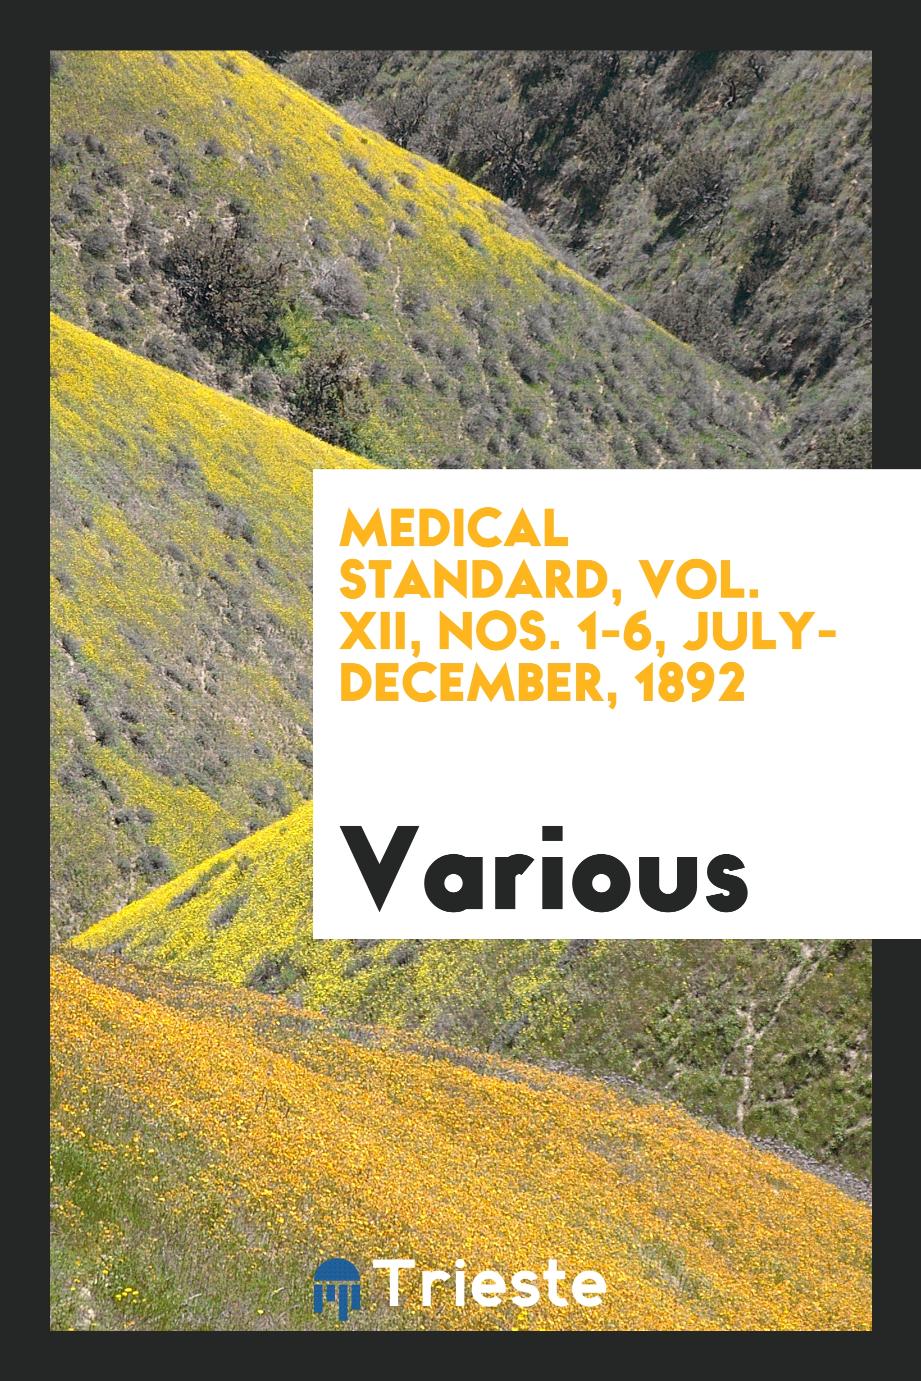 Medical Standard, Vol. XII, Nos. 1-6, July-December, 1892